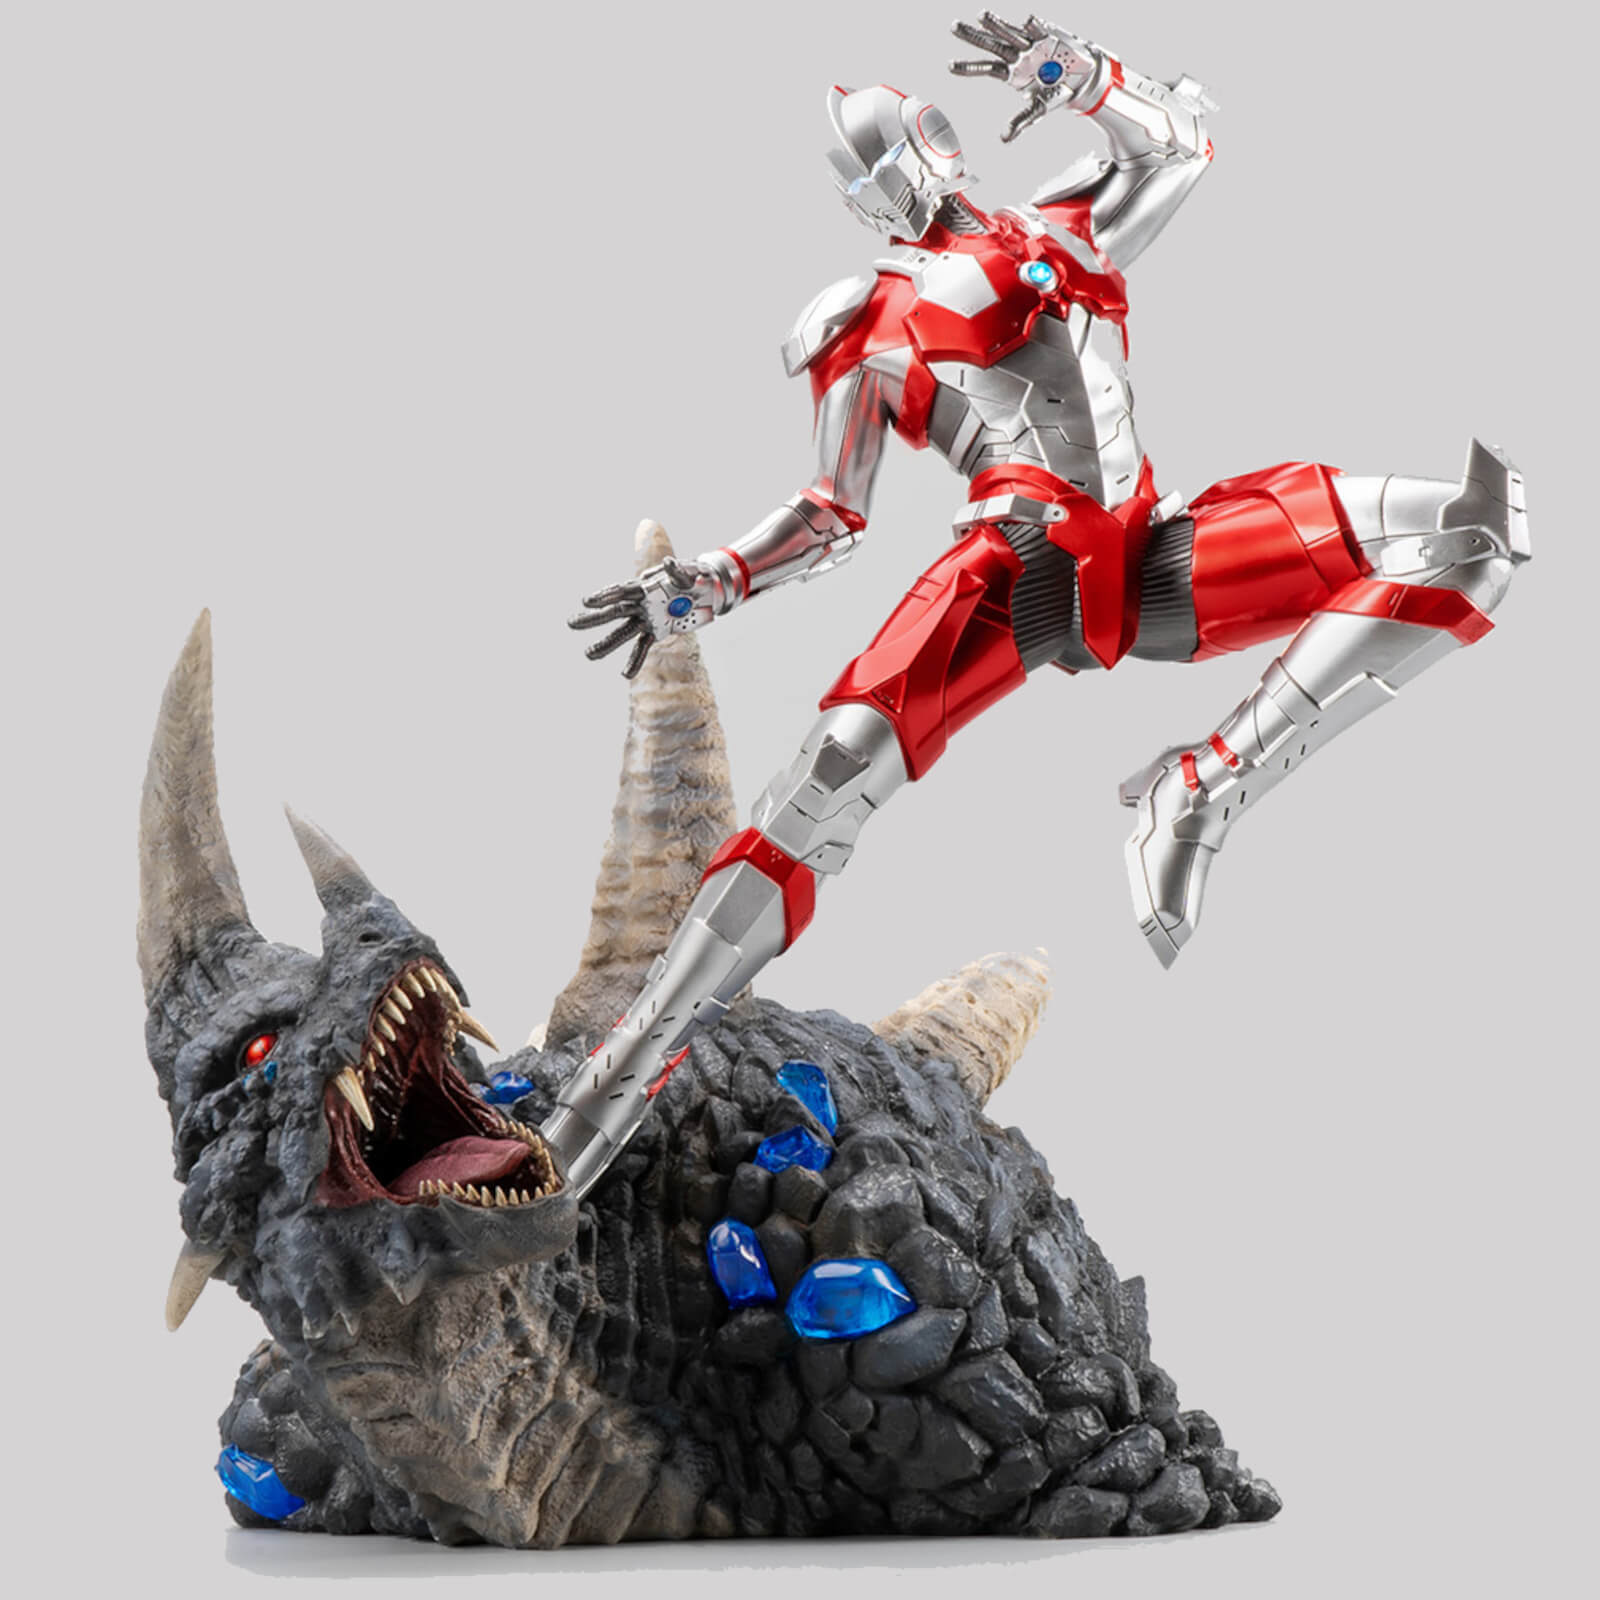 PureArts Ultraman 1/4 Scale Statue - Ultraman Vs. Black King